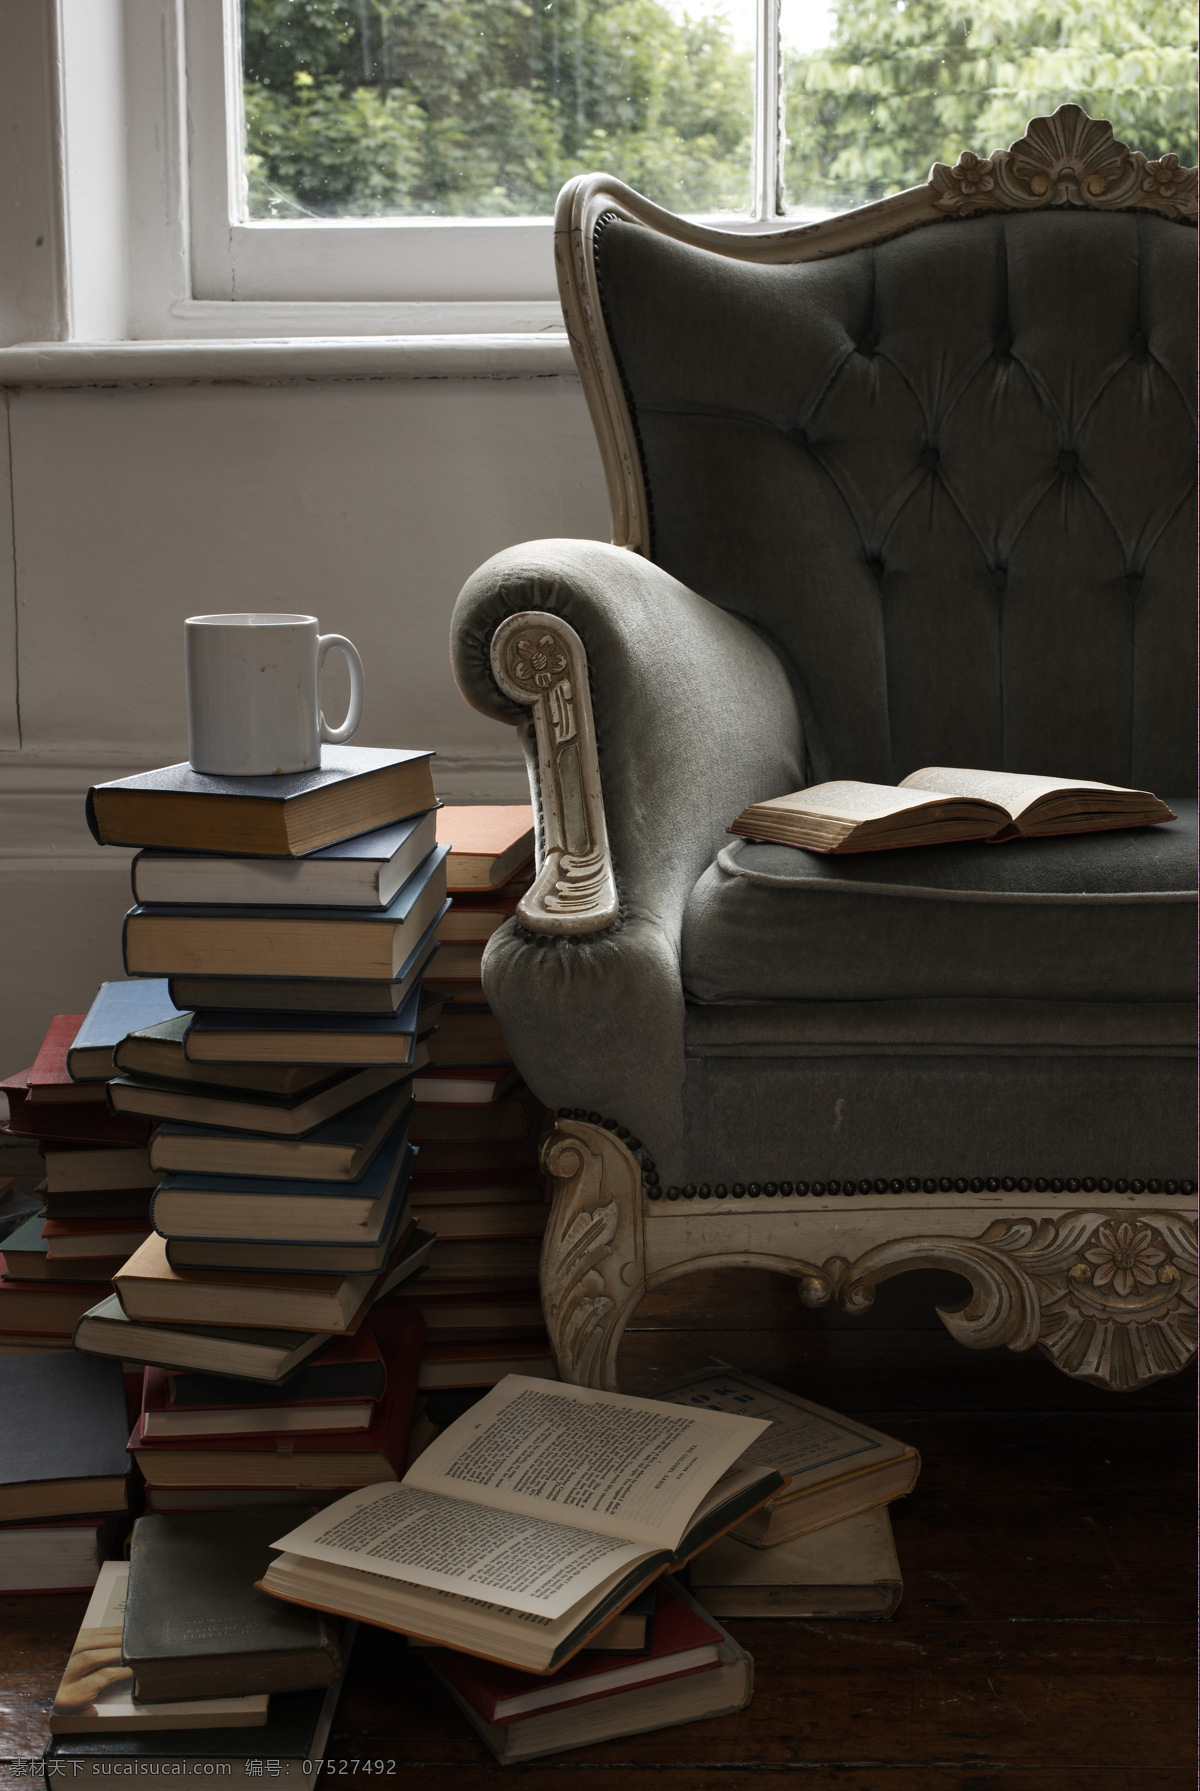 翻开的书 家居生活 咖啡杯 欧式沙发 生活百科 欧式 沙发 静物 写真图片 写真 堆砌的书 窗边 英文书 家居装饰素材